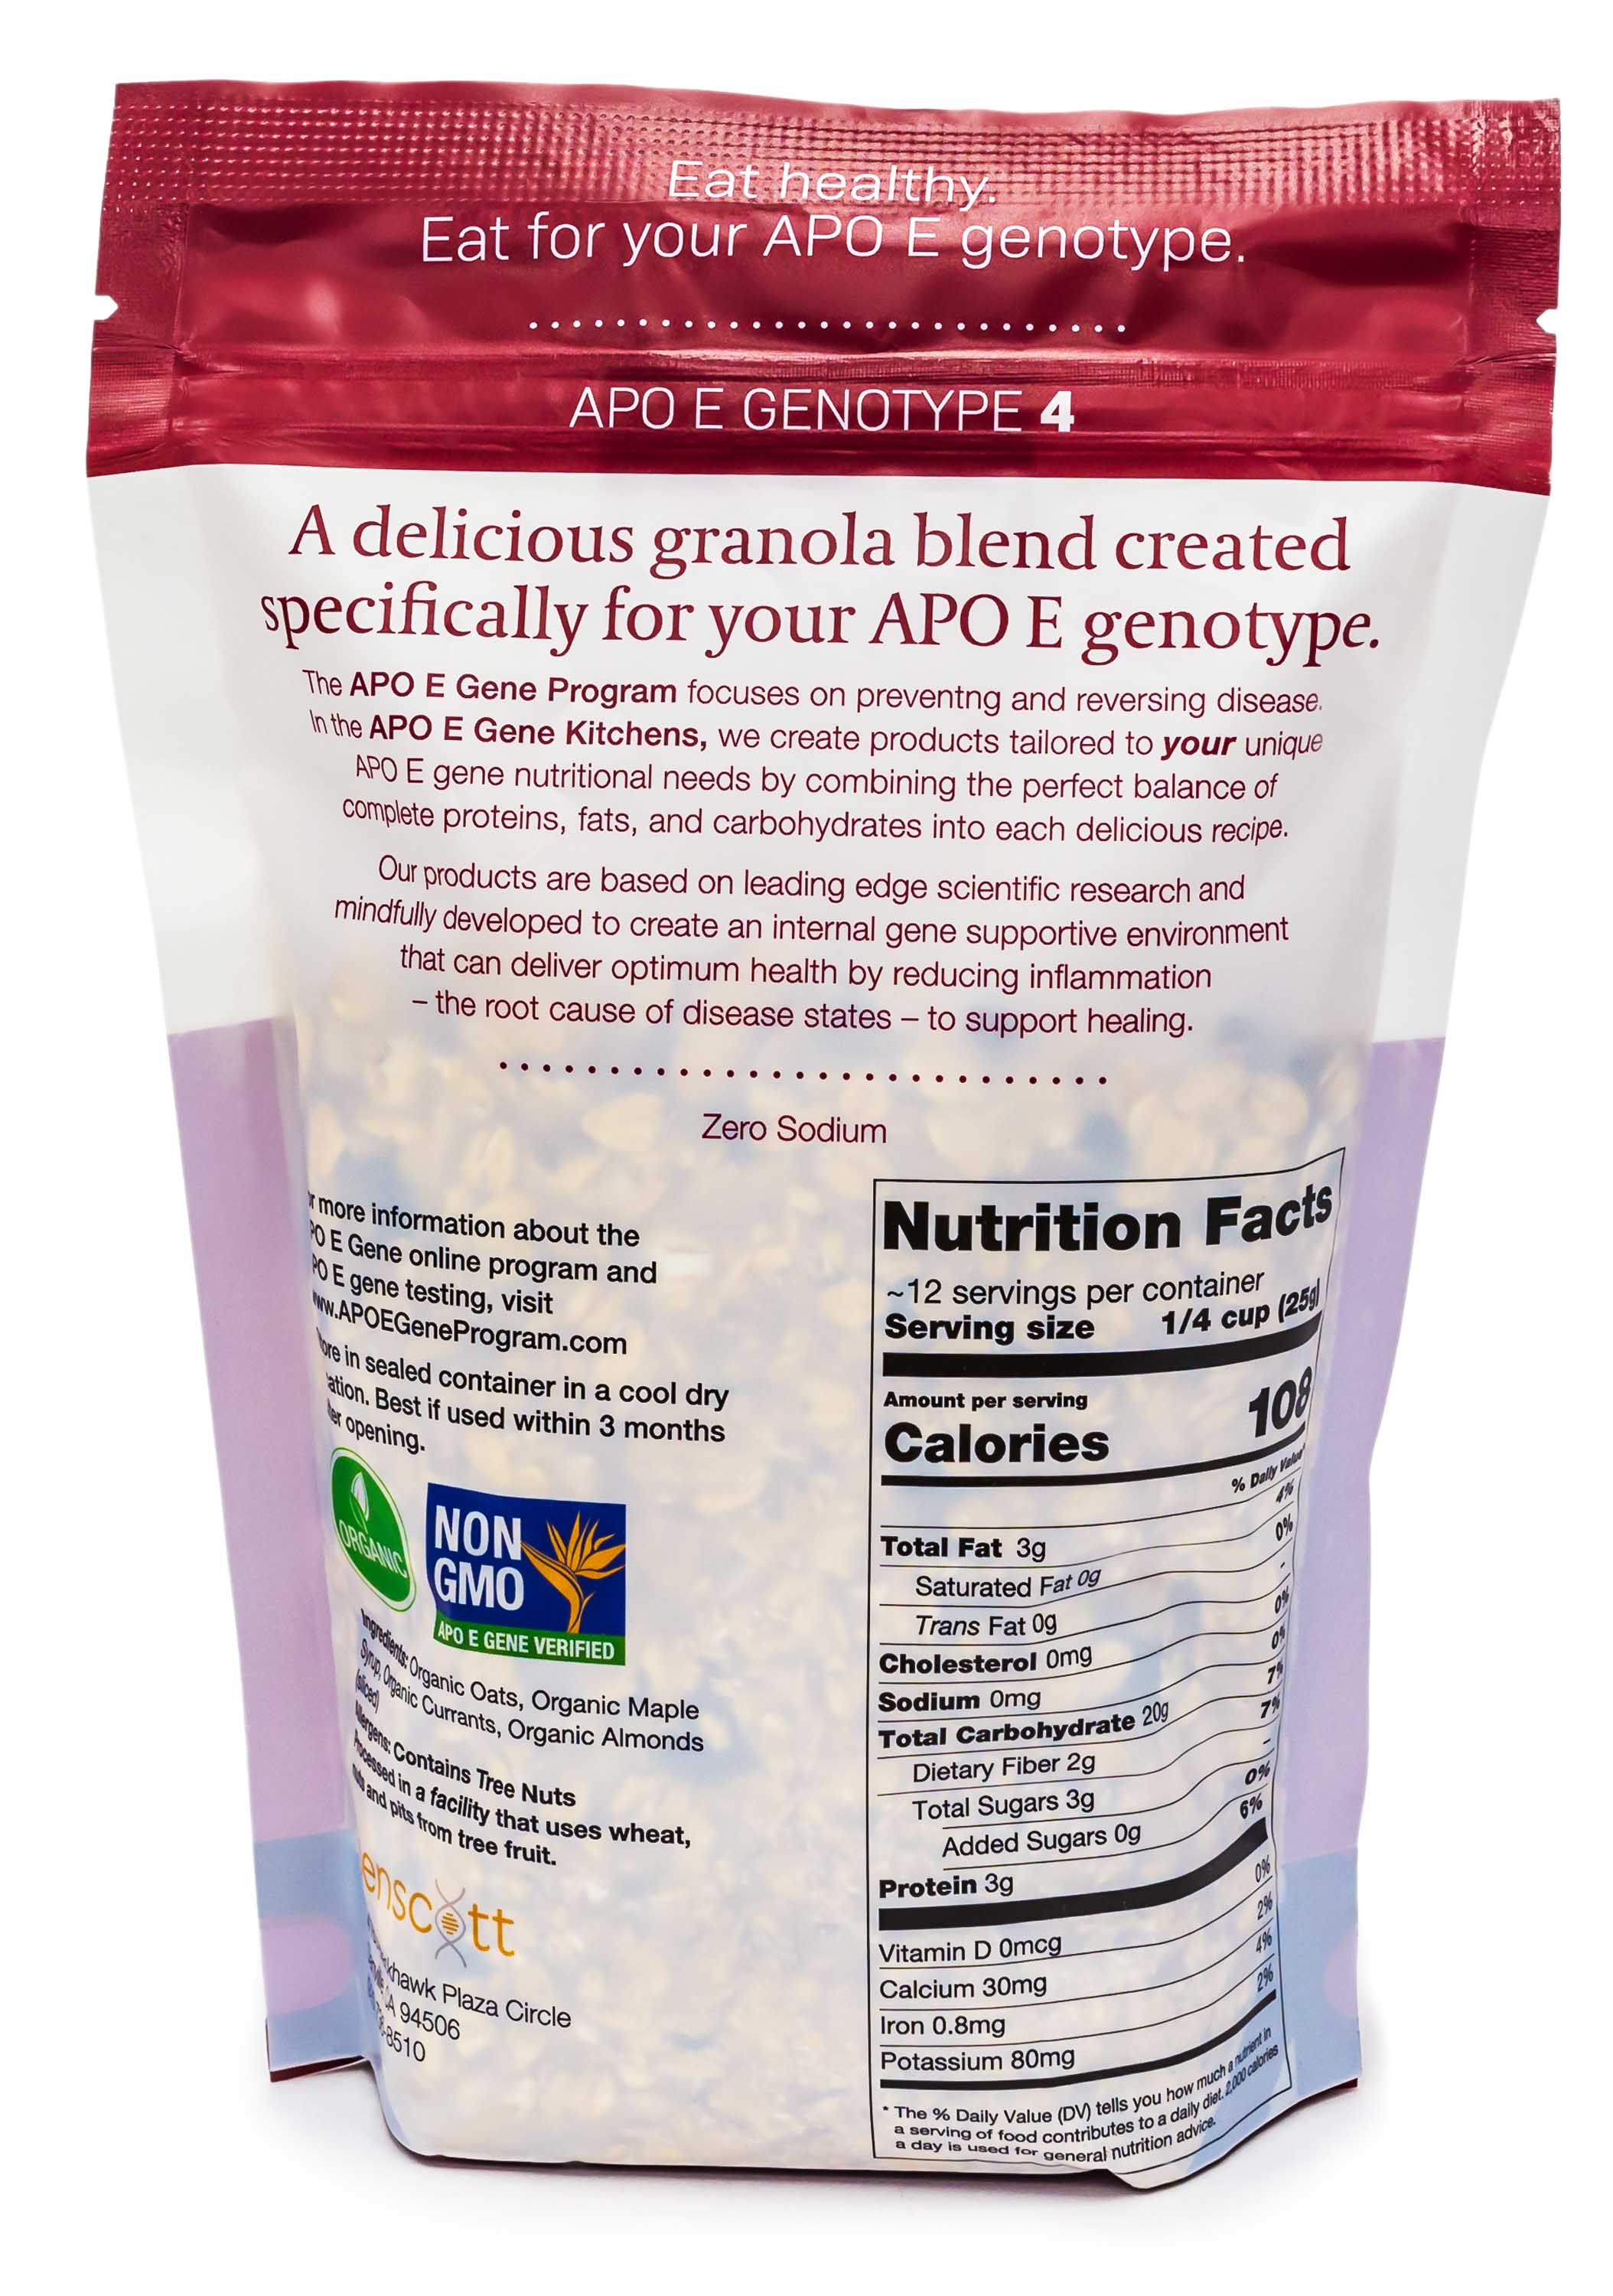 Organic Granola APO E Genotype 4